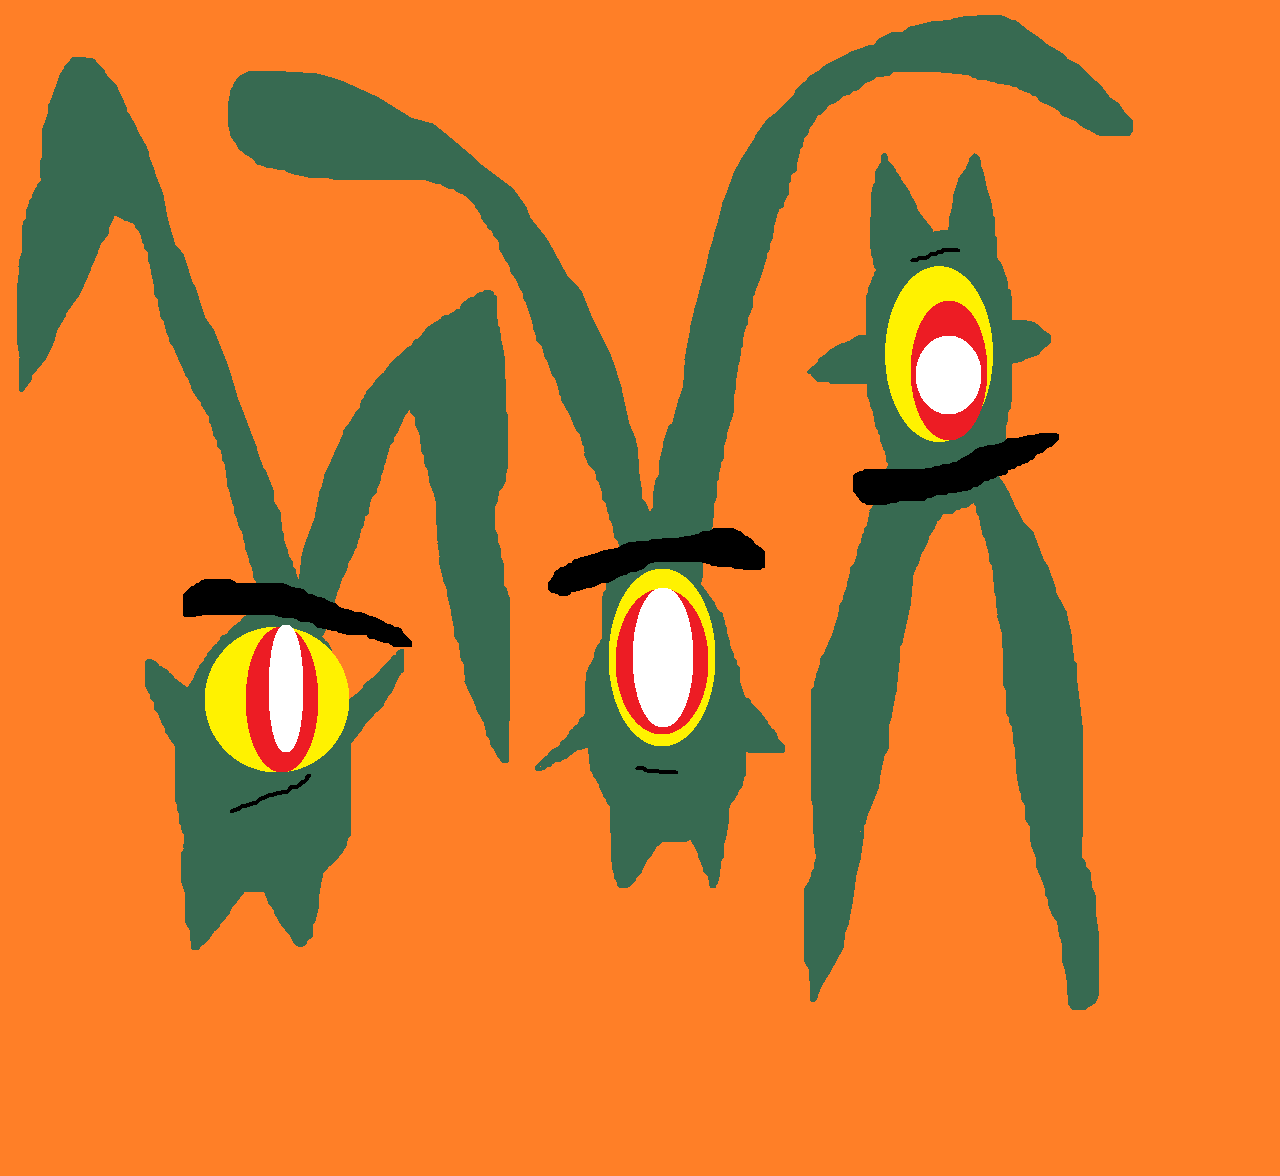 Three Random Planktons by Falconlobo